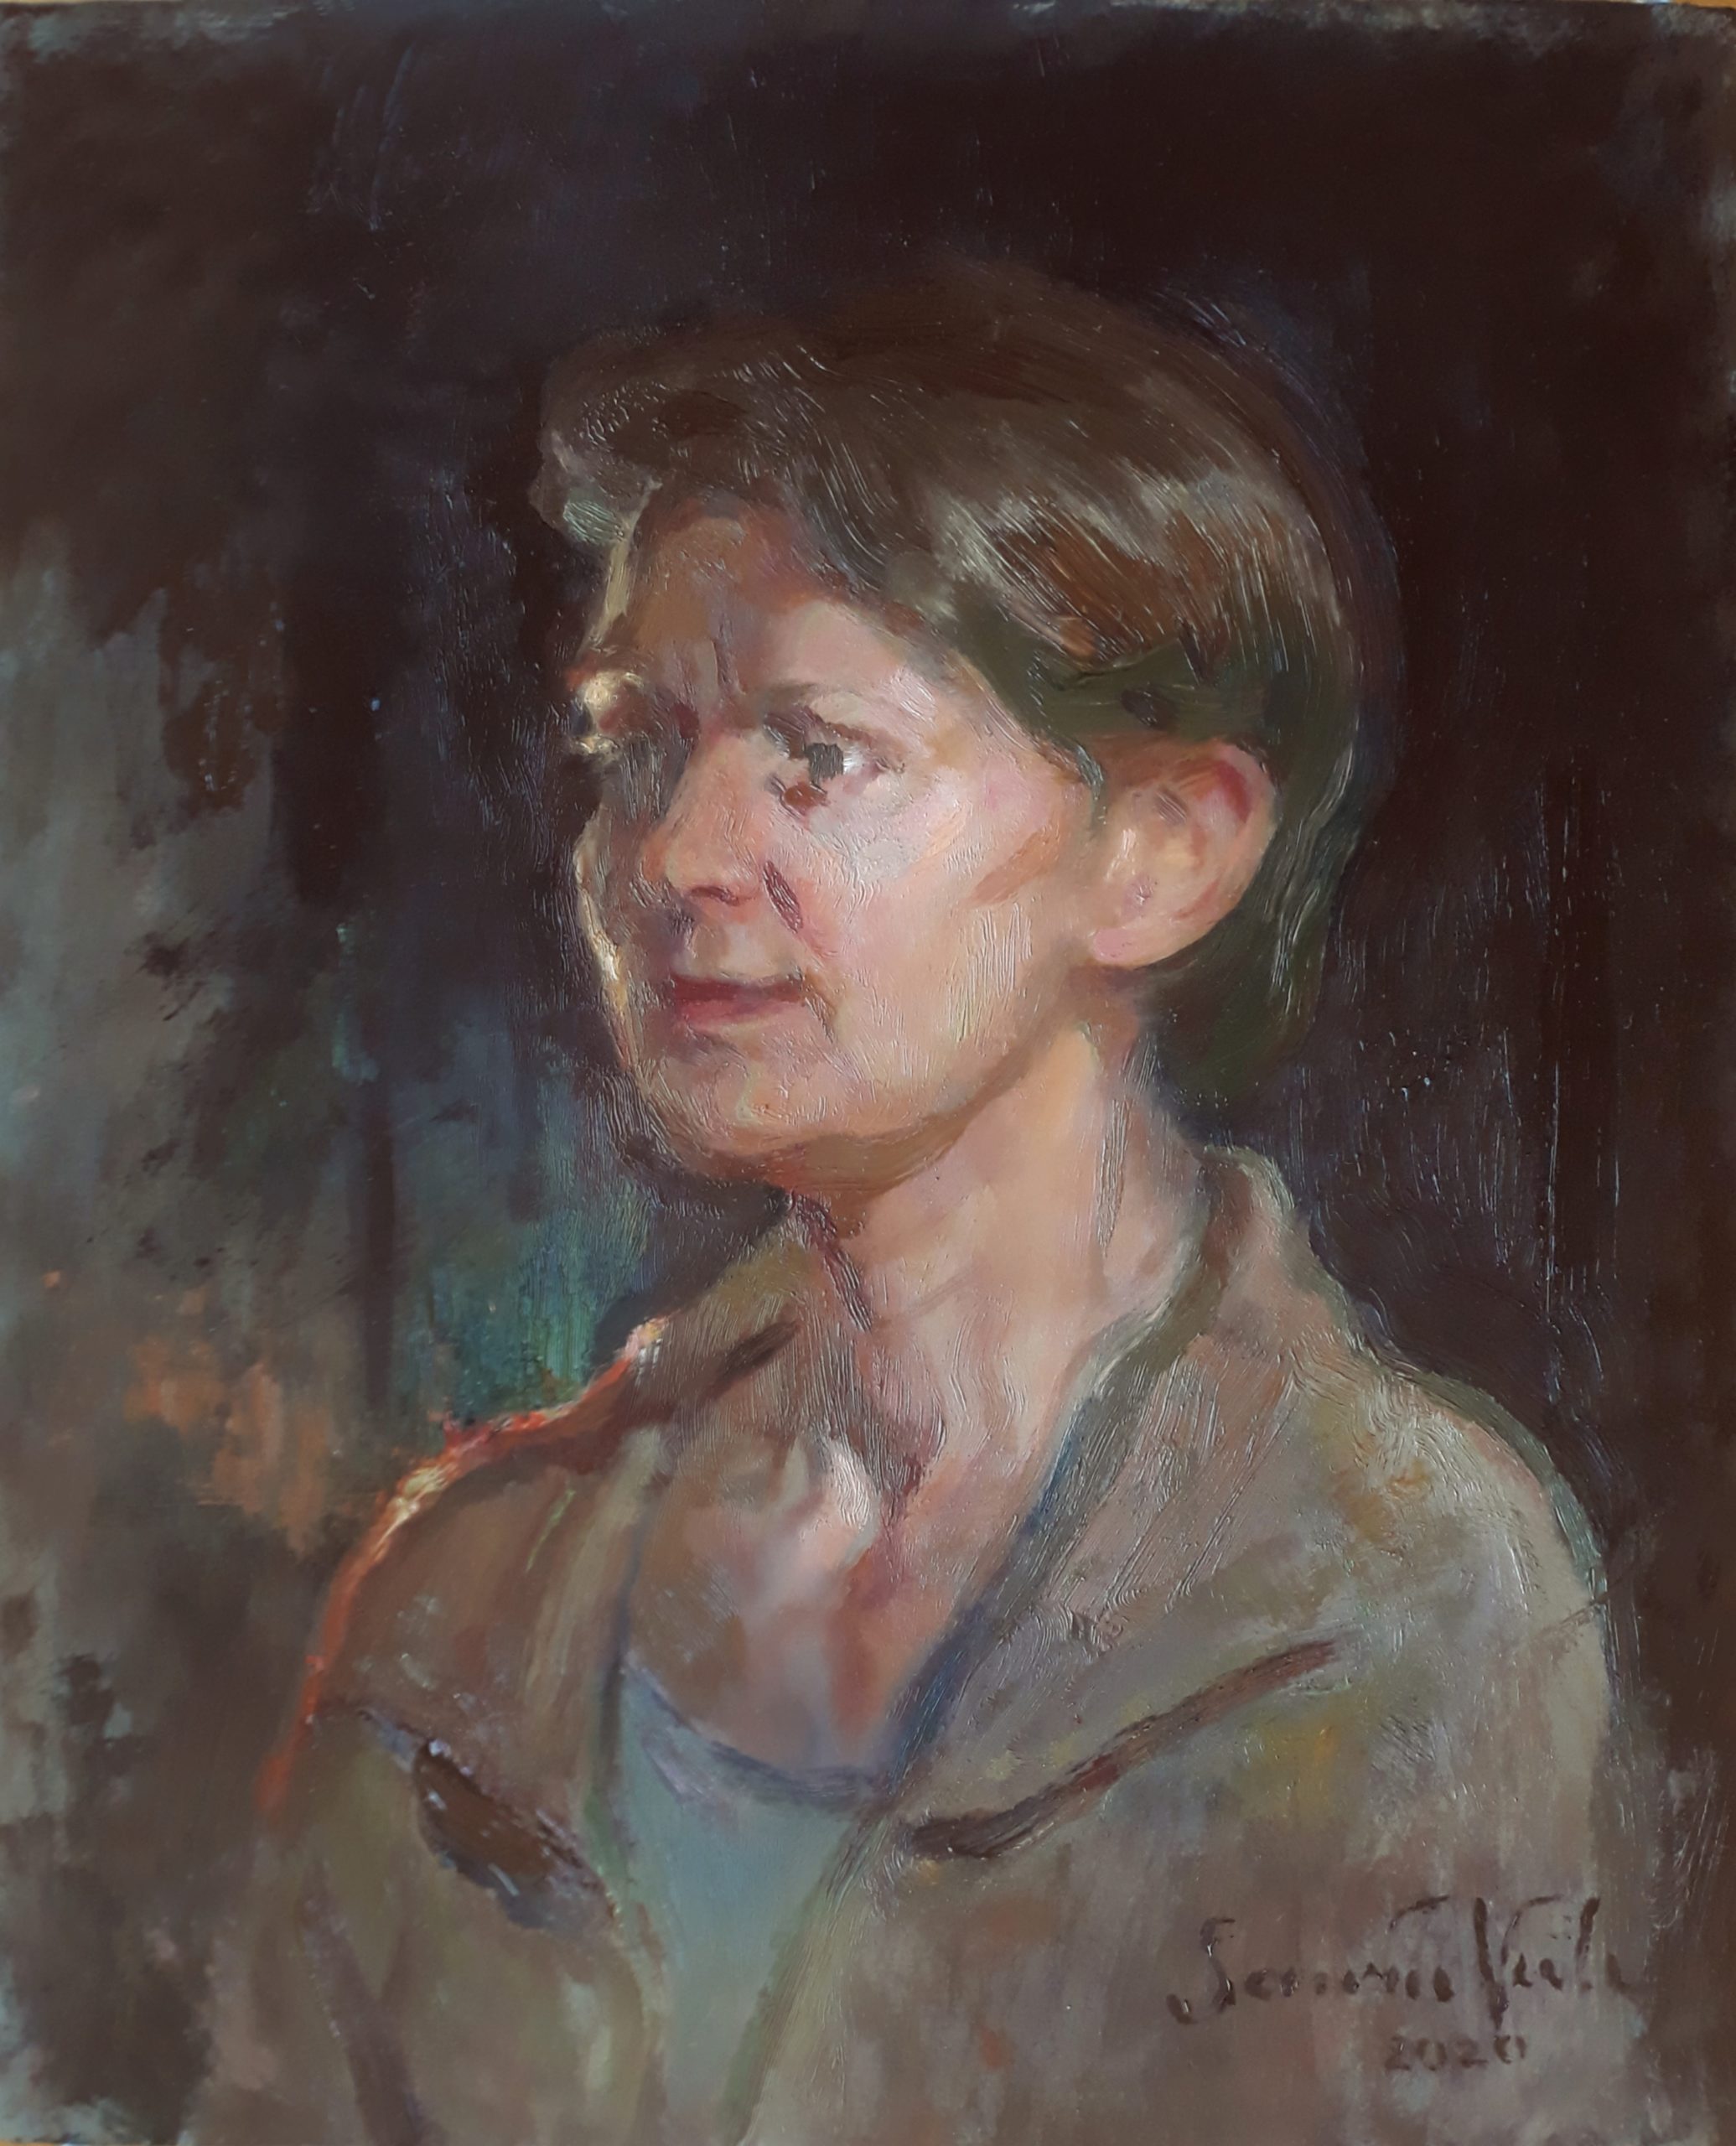 õlimaal "Ema" kunstnik Saara Väli realism portree